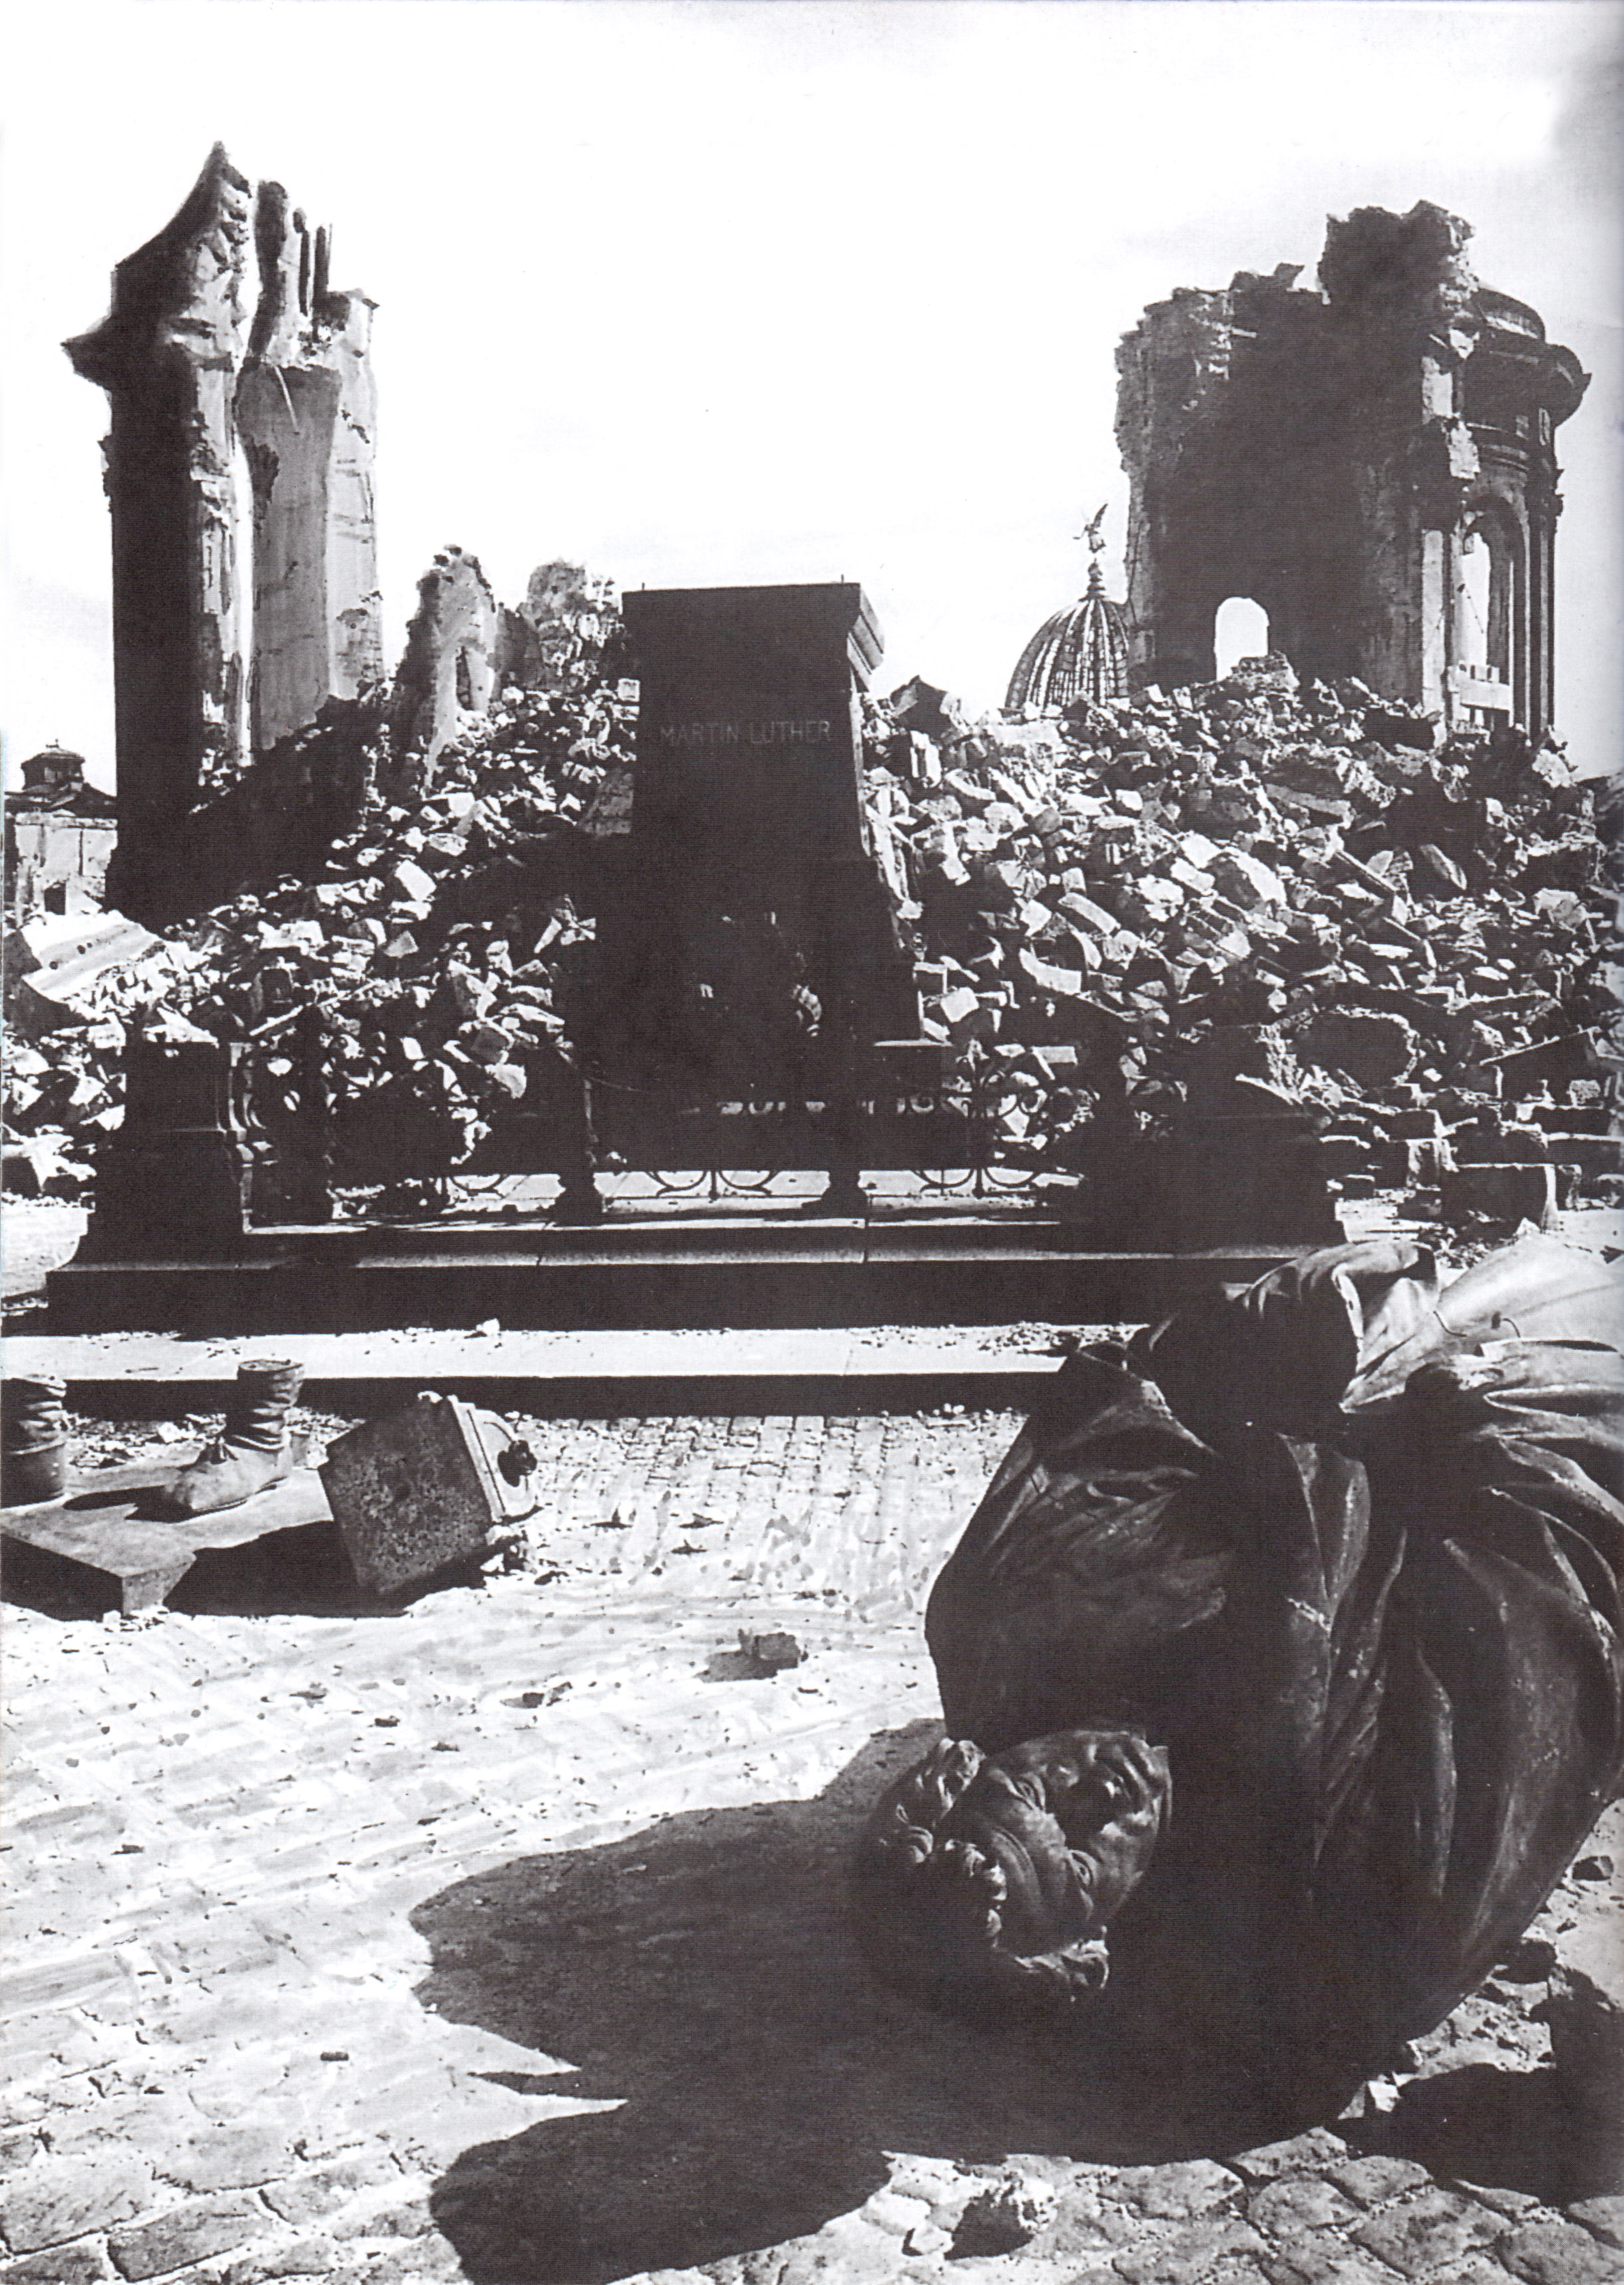 Дрезден, 1945. Собор Фрауэнкирхе и памятник Мартину Лютеру, разрушенные в результате бомбардировки в феврале 1945 года. Фото АР. Источник https://img-fotki.yandex.ru/